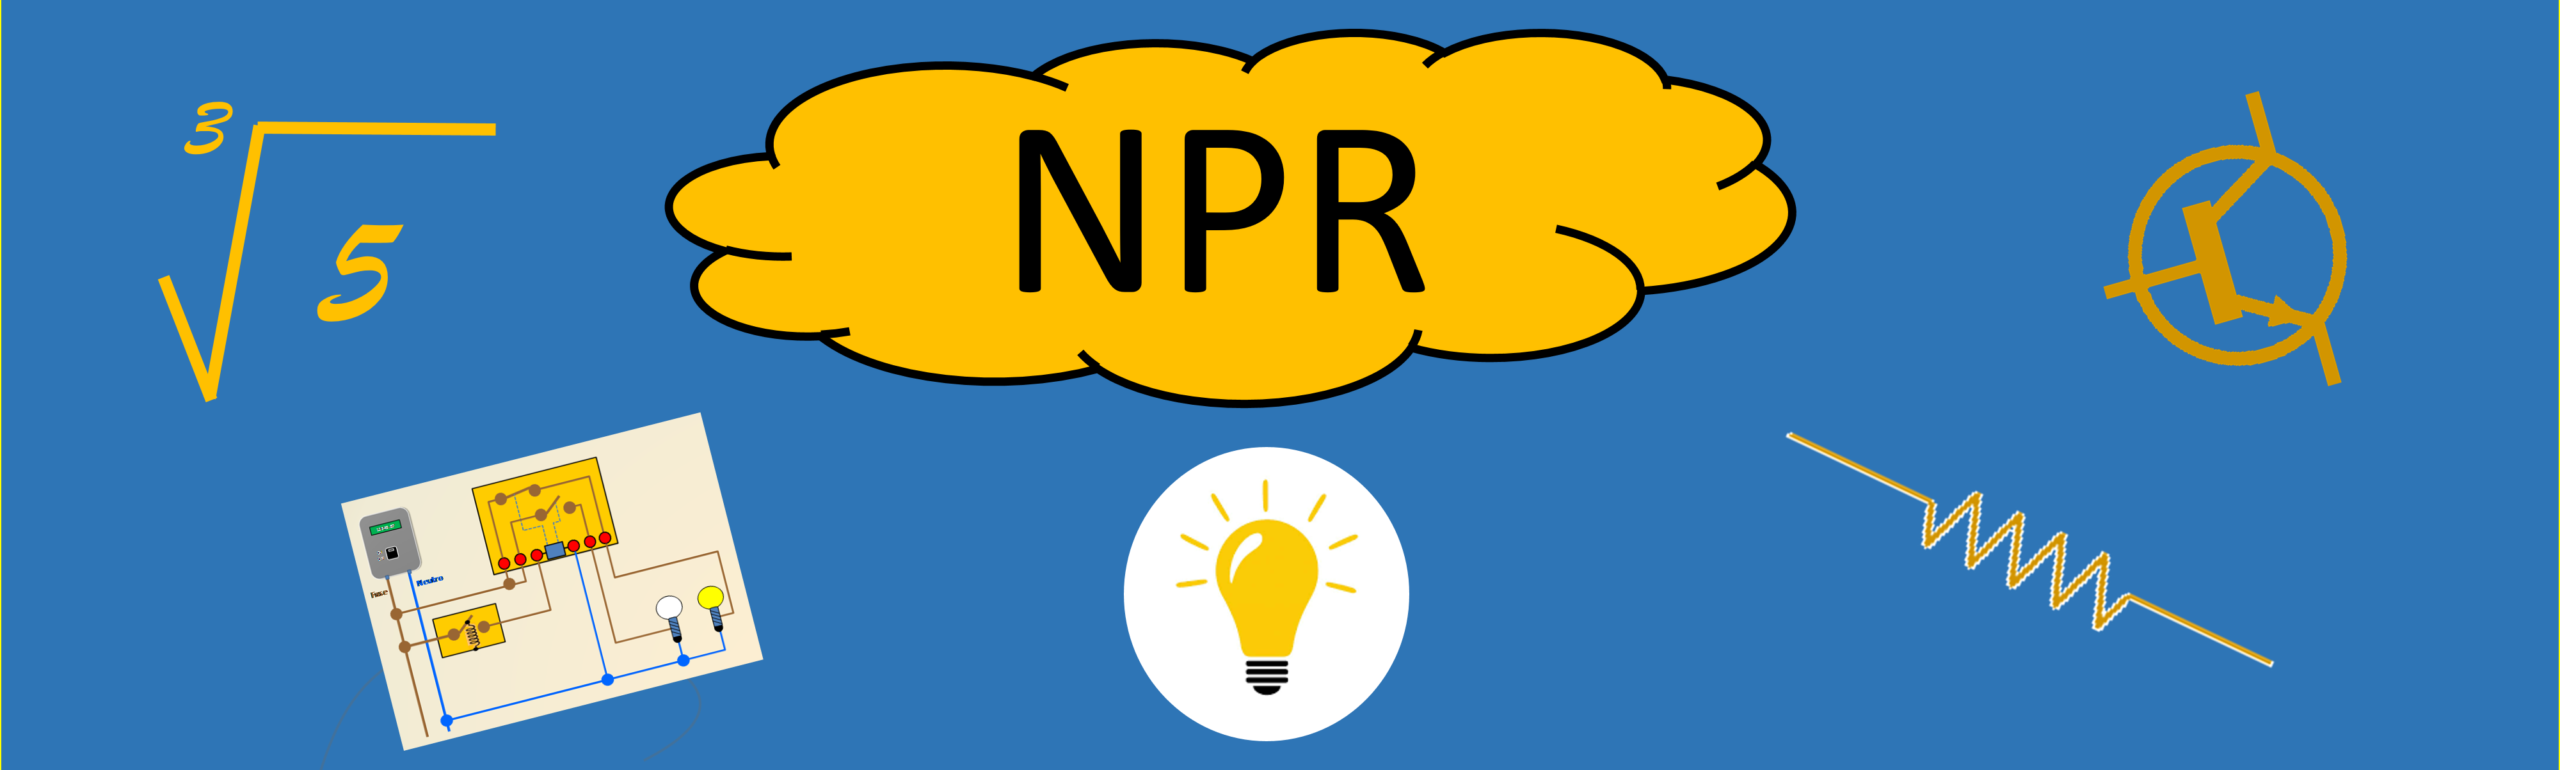 NPR Tech News & Tutorials